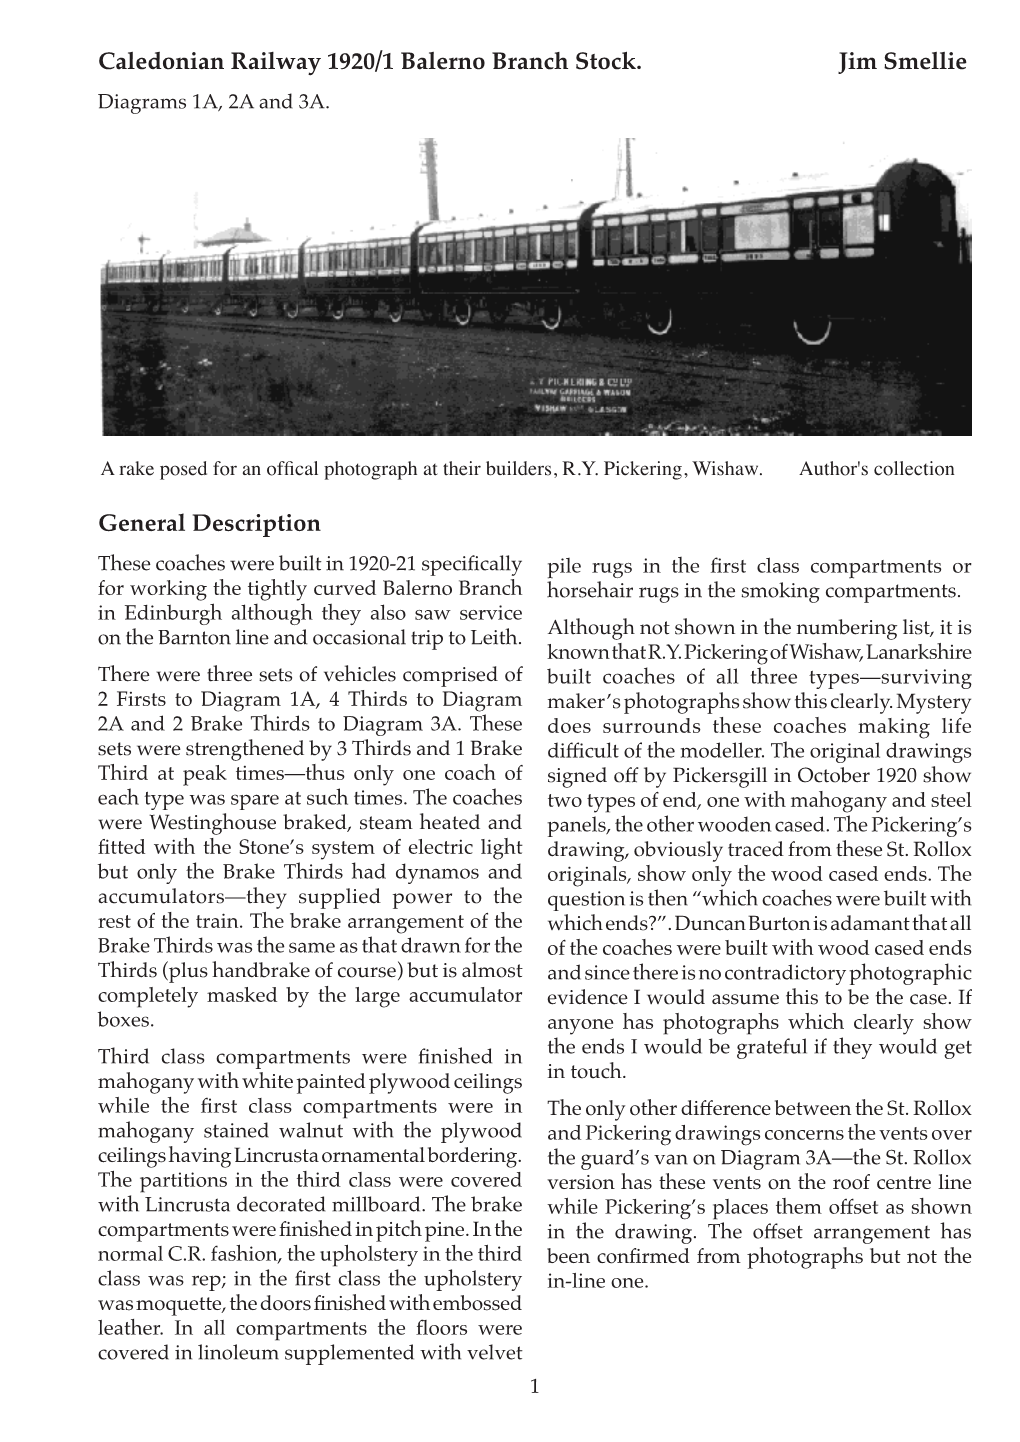 General Description Caledonian Railway 1920/1 Balerno Branch